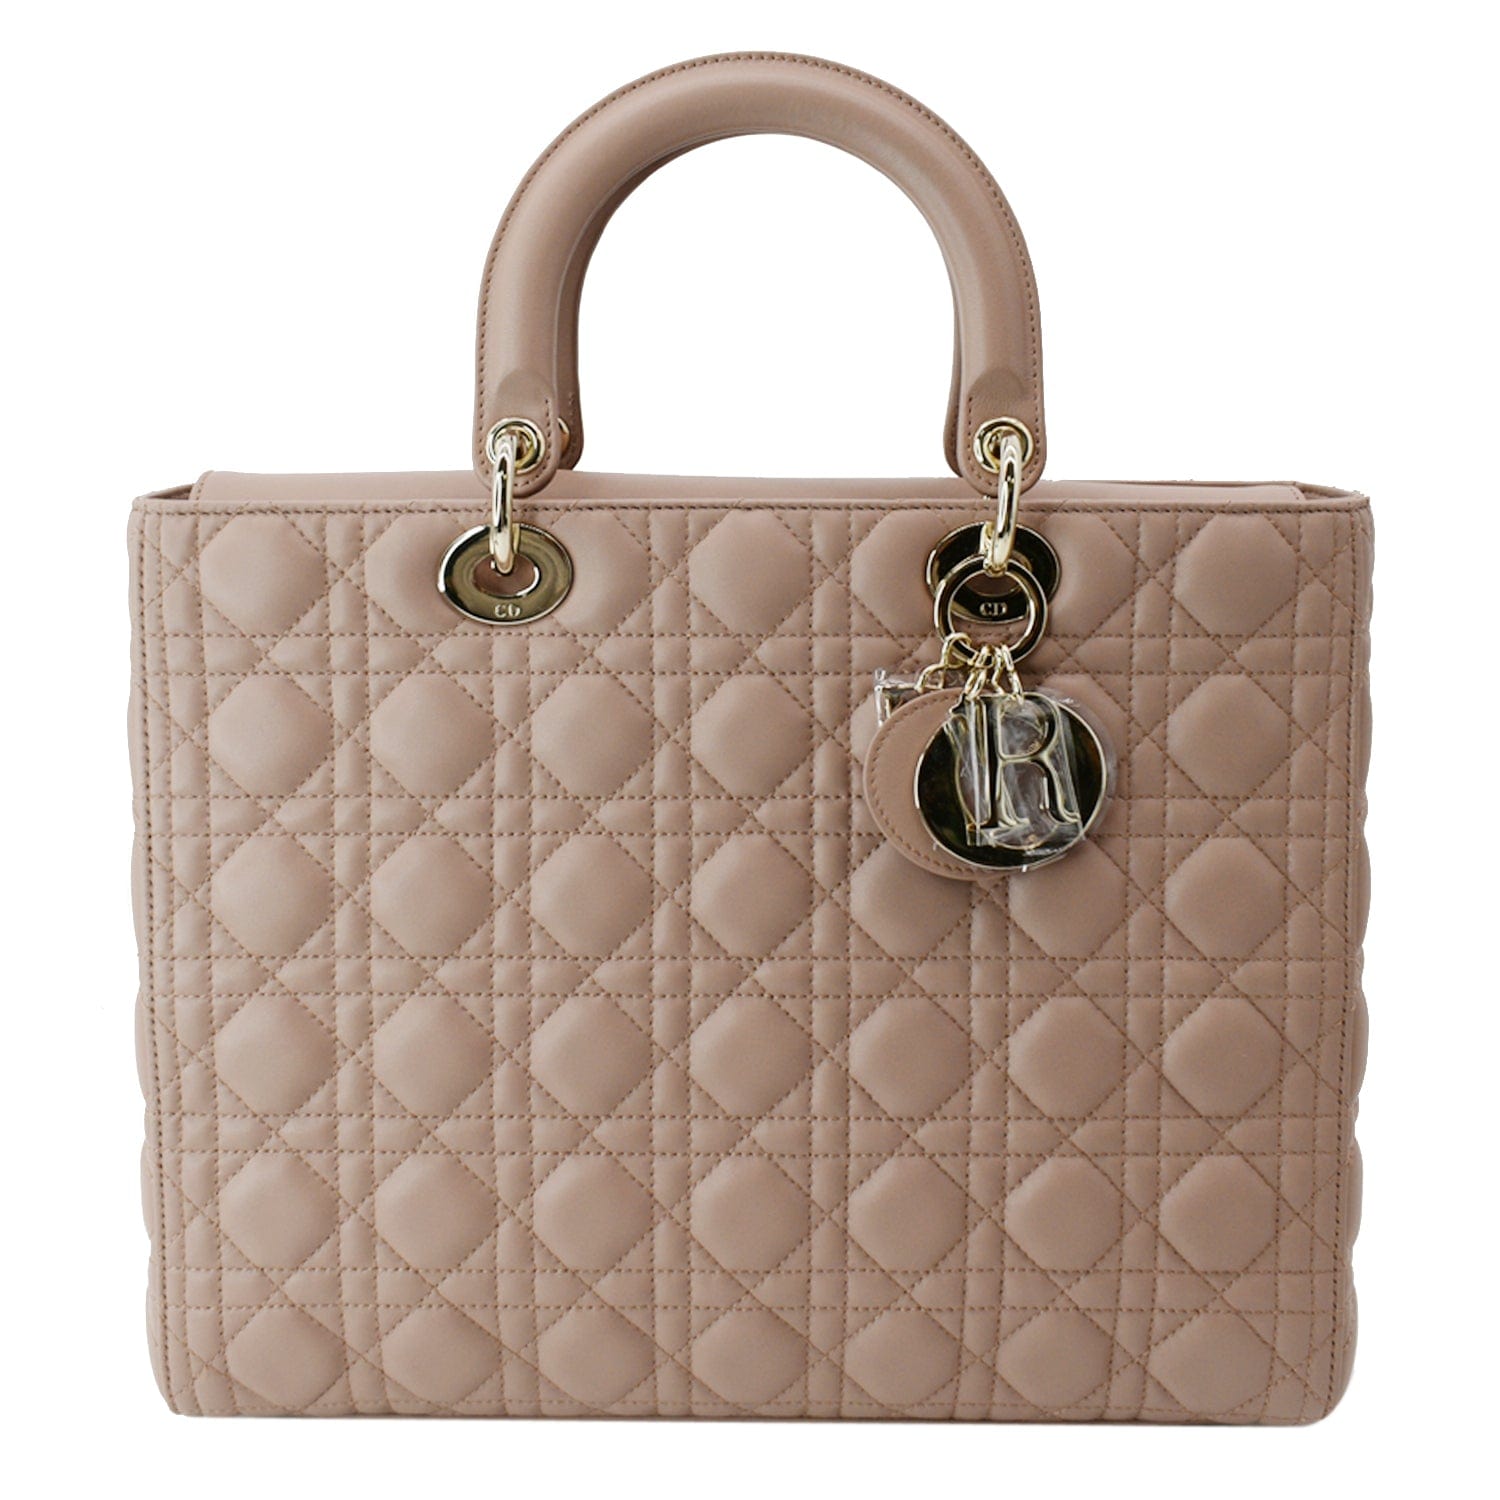 Dior Lady Dior Leather Handbag